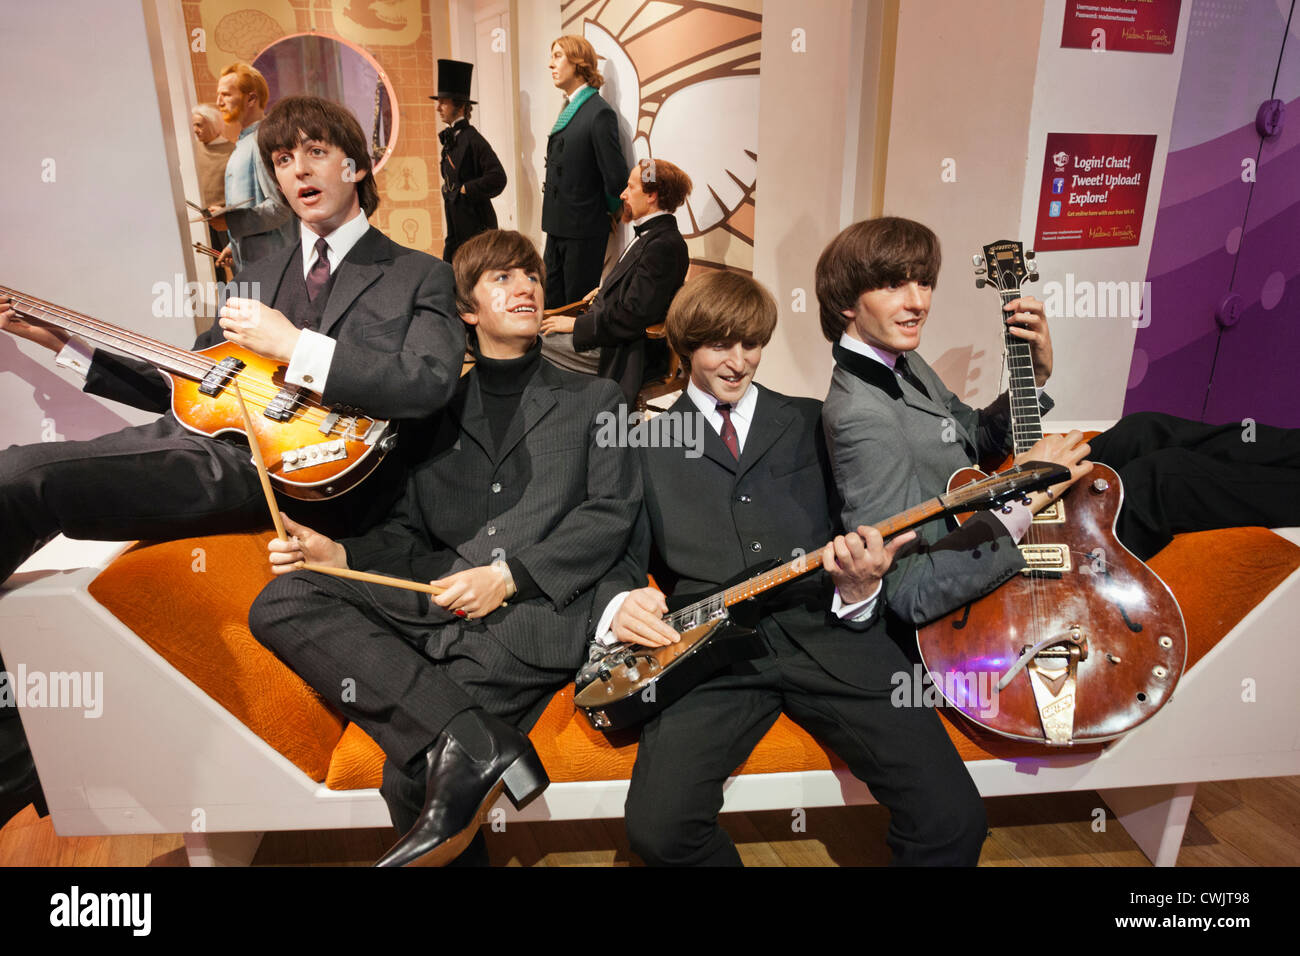 L'Angleterre, Londres, Madame Tussauds, affichage de cire des Beatles Banque D'Images